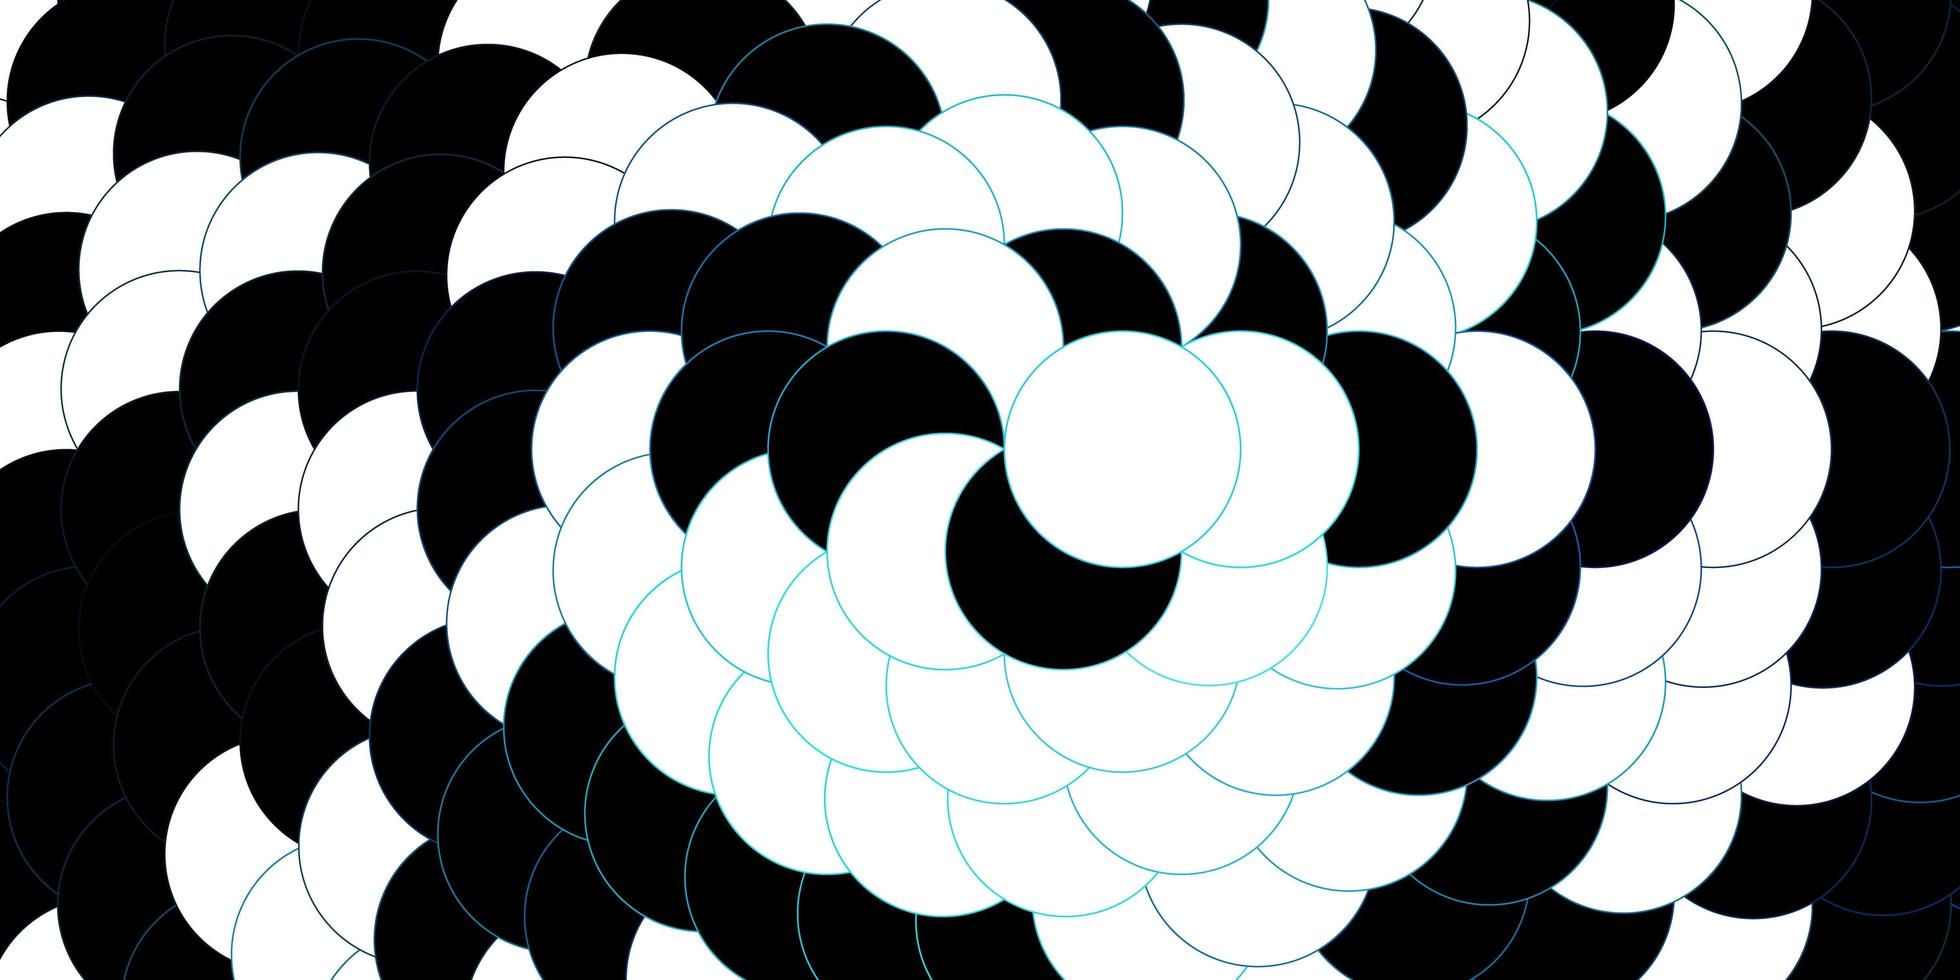 donkerblauwe vector sjabloon met cirkels moderne abstracte illustratie met kleurrijke cirkel vormen patroon voor wallpapers gordijnen